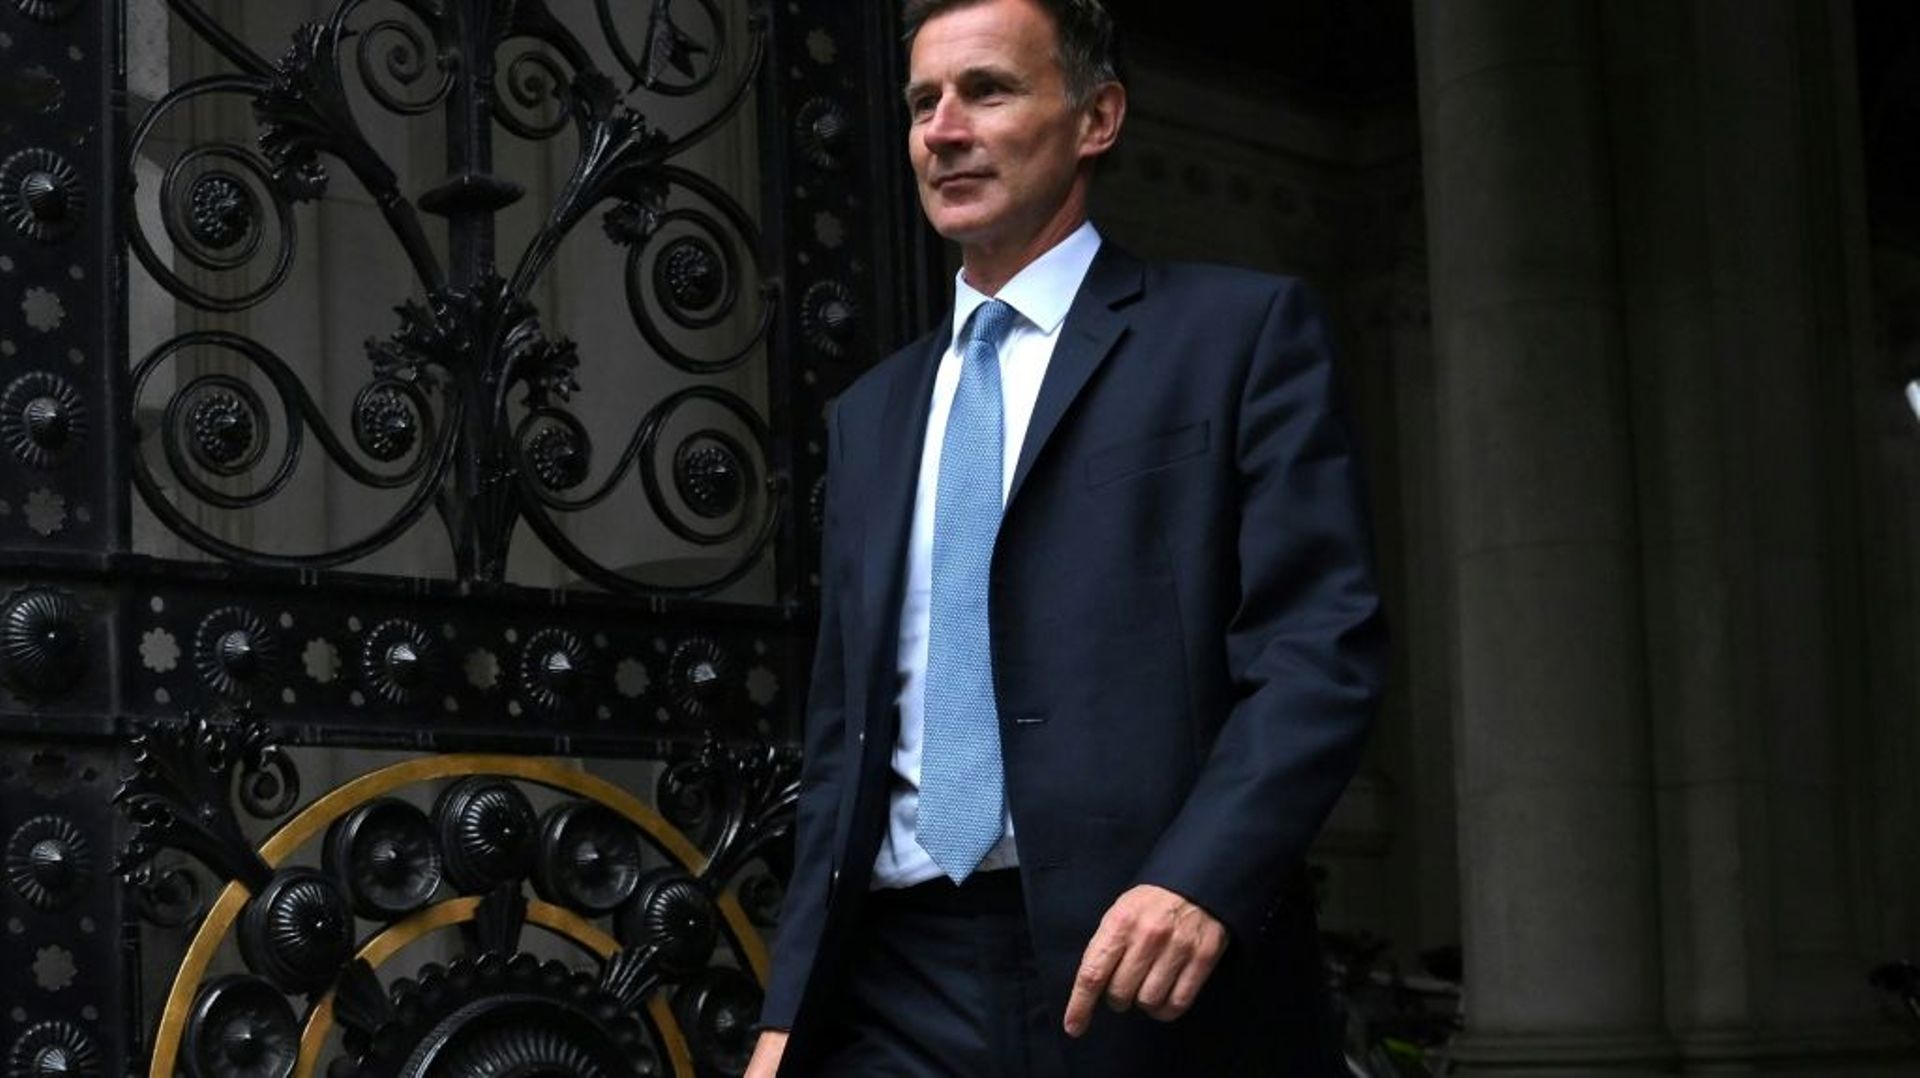 Le nouveau ministre britannique des Finances Jeremy Hunt à la sortie du 10 Downing Street, le 14 octobre 2022 à Londres